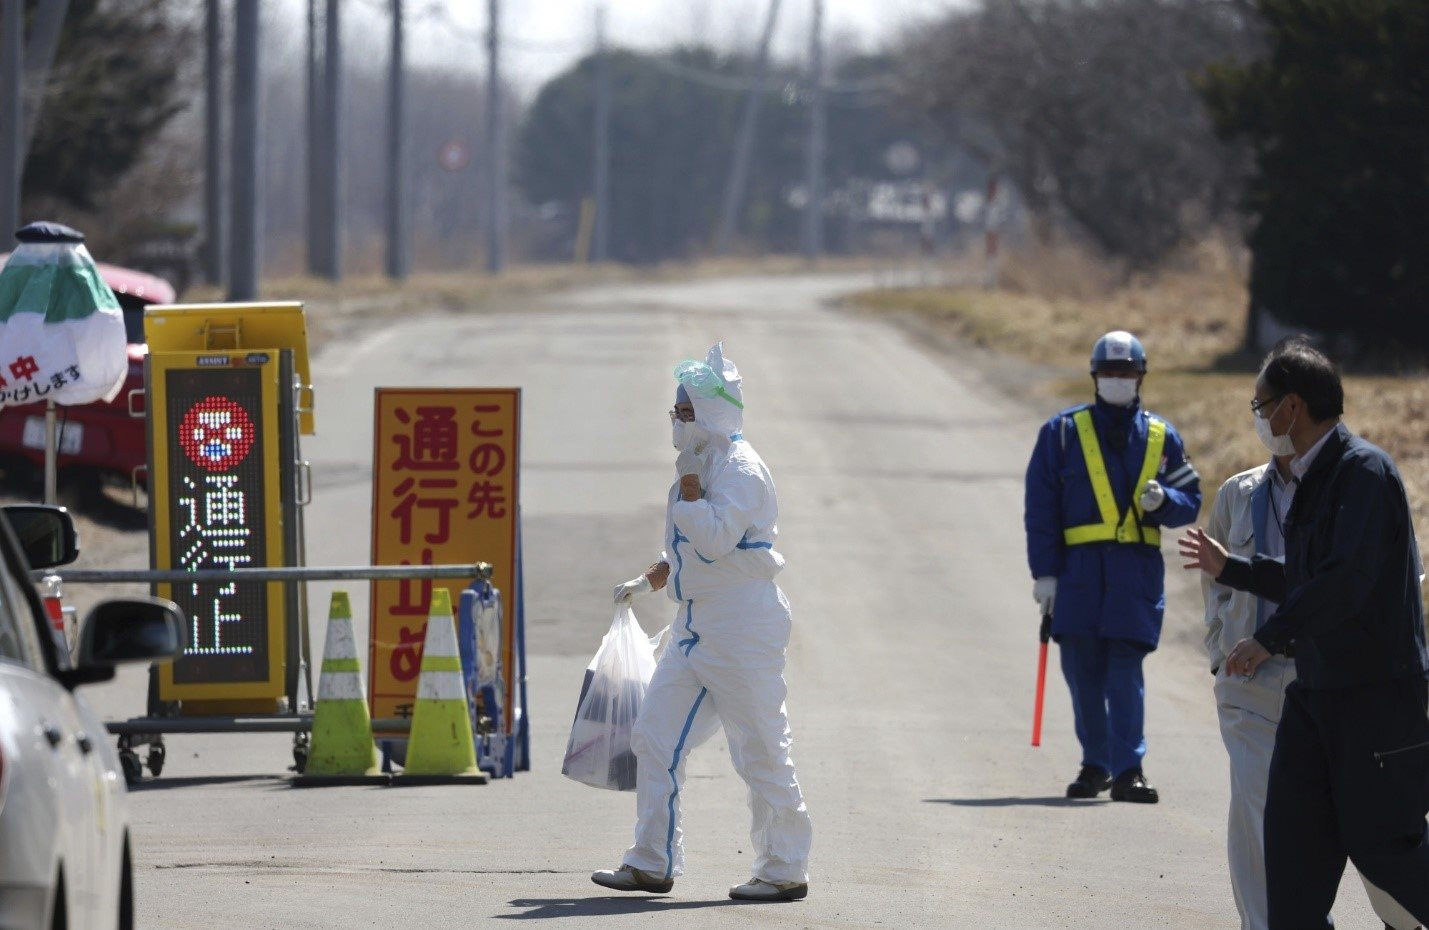 Nhật Bản rơi vào tình cảnh "khủng hoảng trứng gia cầm" khi dịch cúm tồi tệ tới mức không còn chỗ mà chôn gà chết